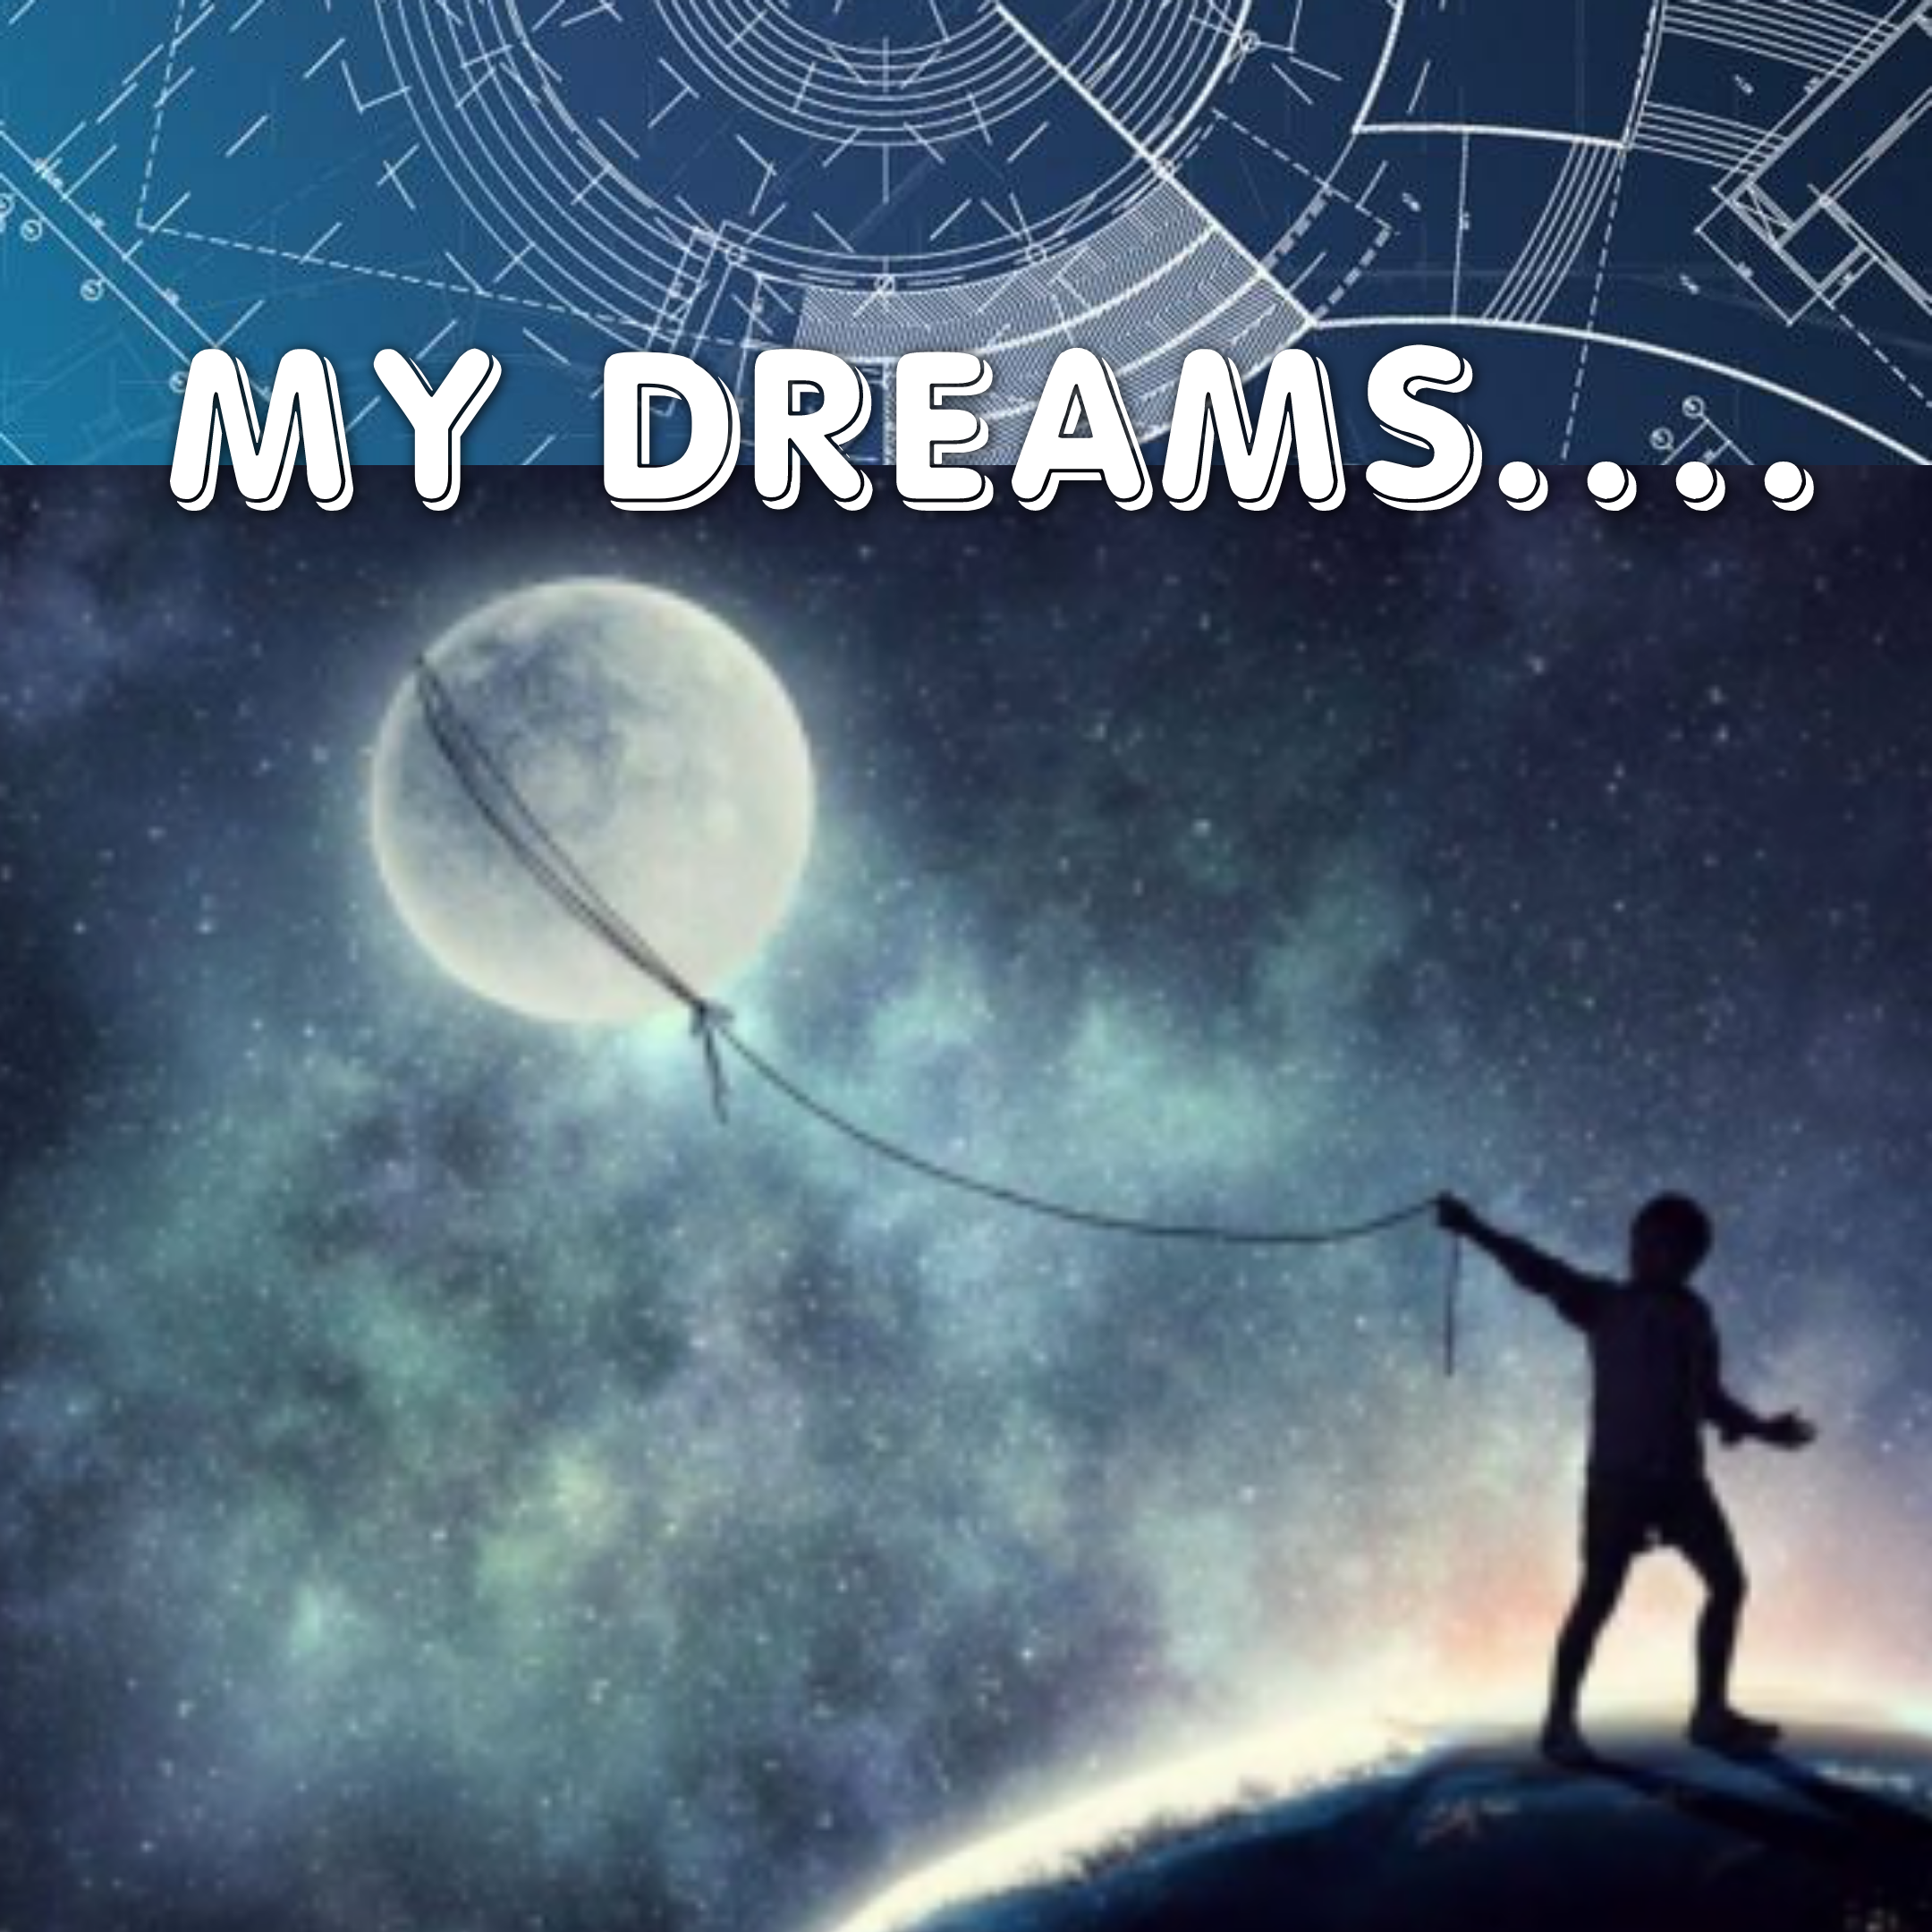 Dreams…